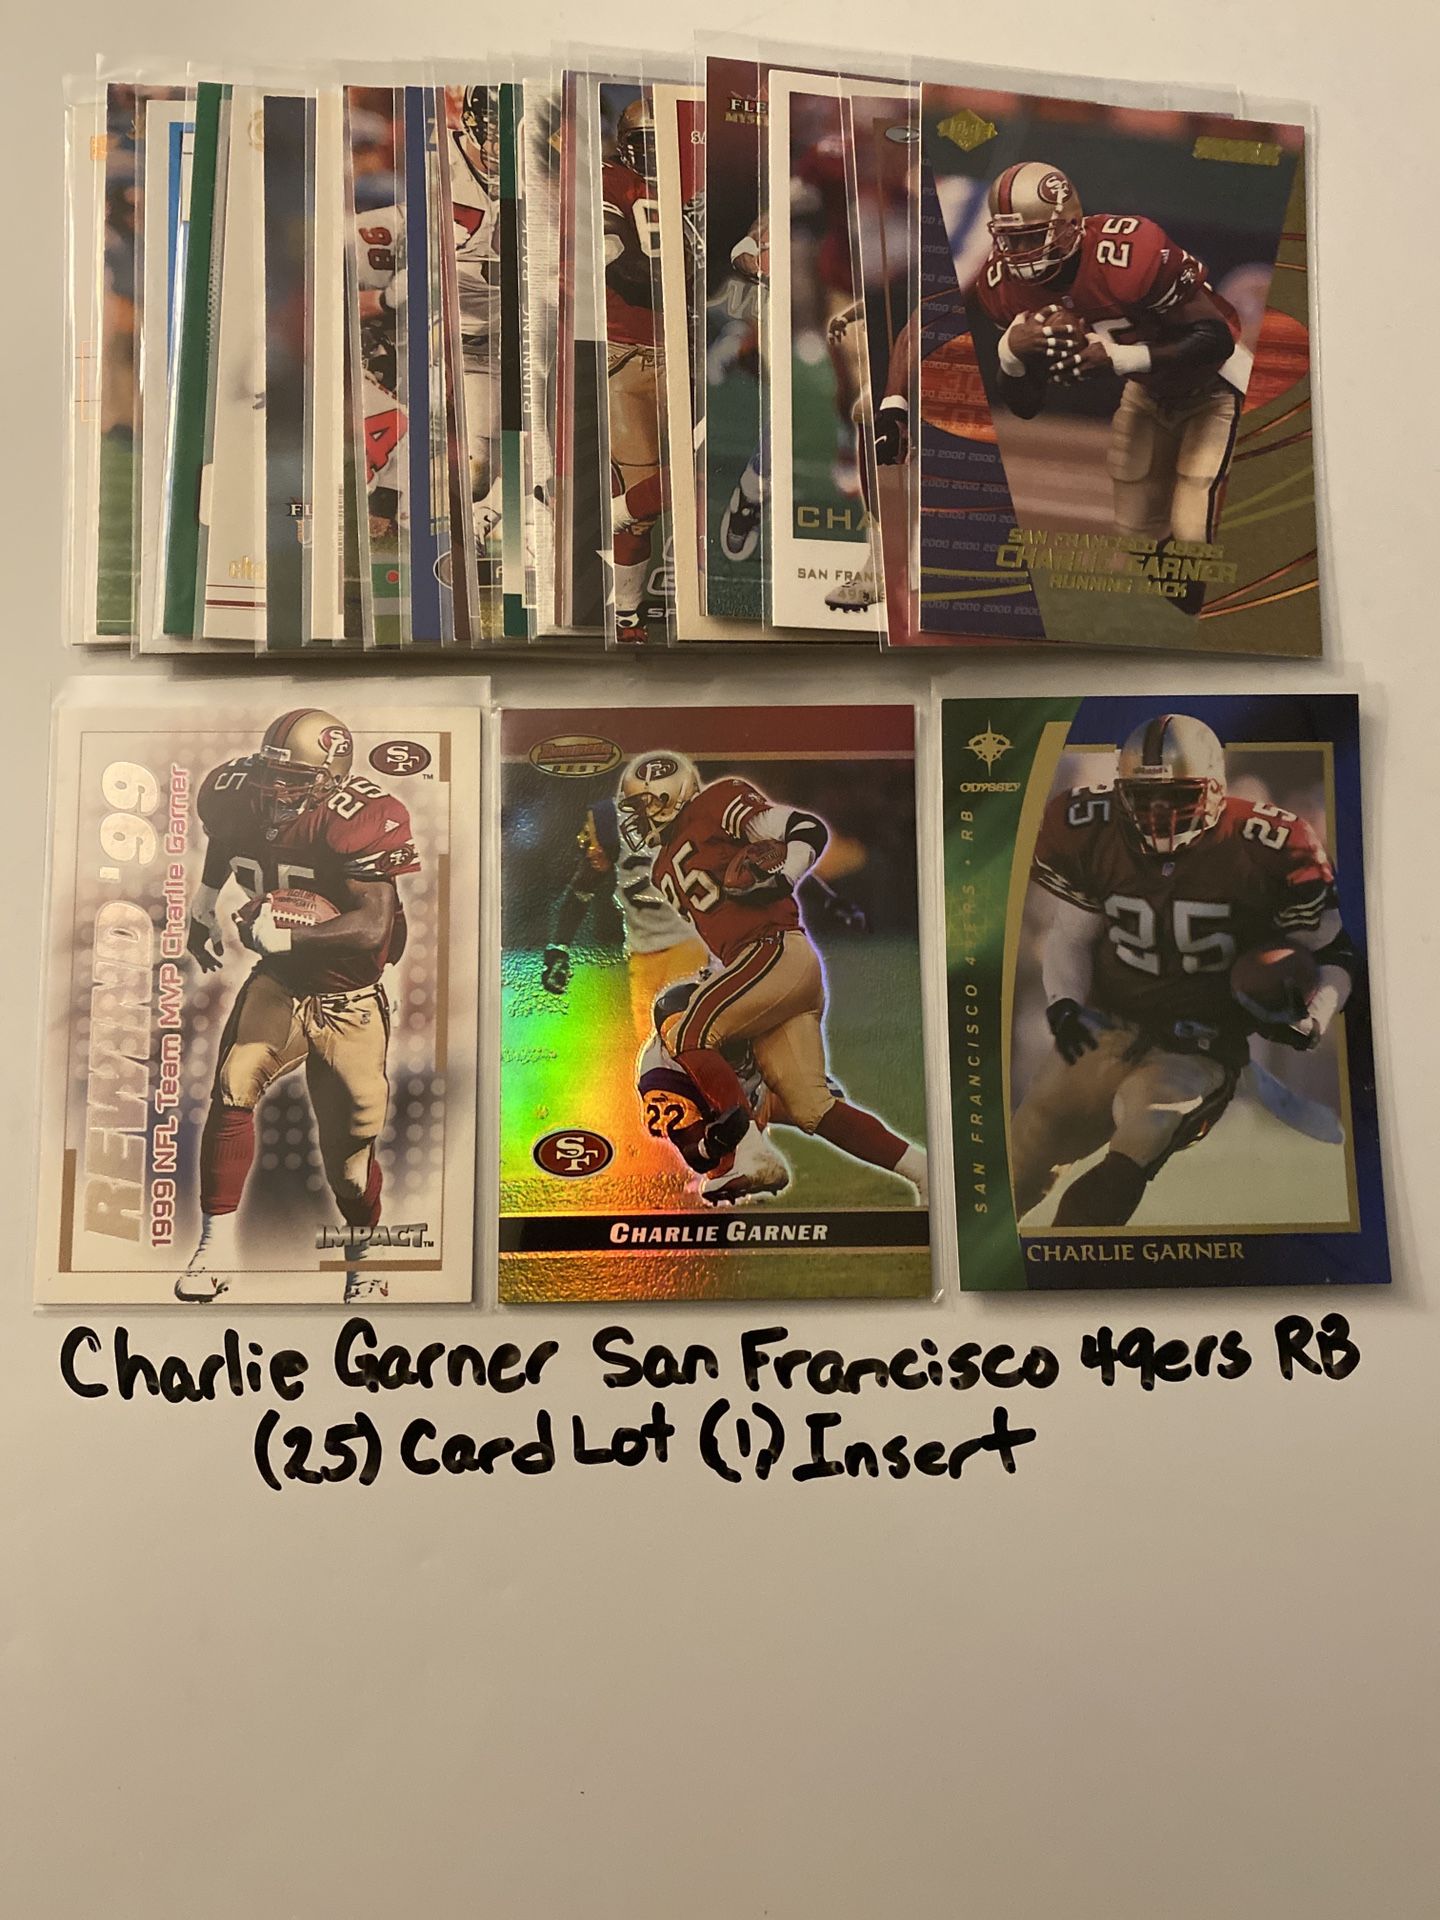 Charlie Garner San Francisco 49ers All Pro RB (25) Card Lot (1) Insert.